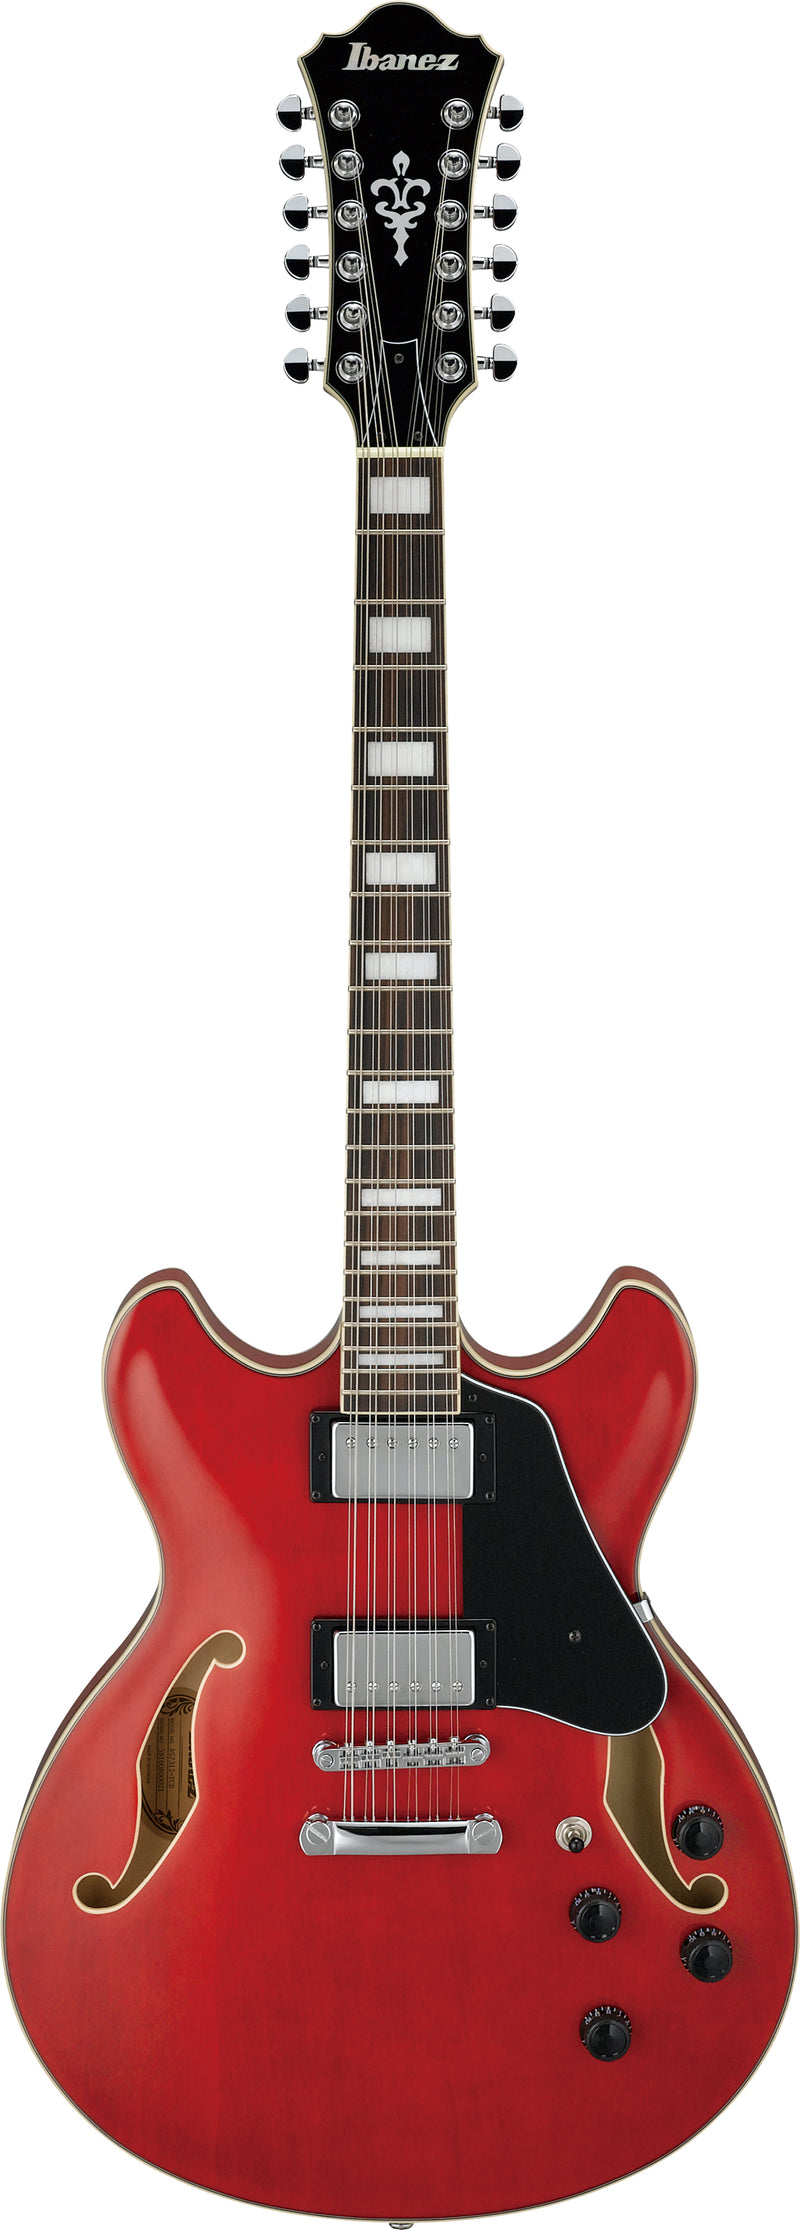 Ibanez AS7312TCD AS Artcore - Guitare électrique semi-creuse 12 cordes avec chevalet ART 12 - Rouge cerise transparent